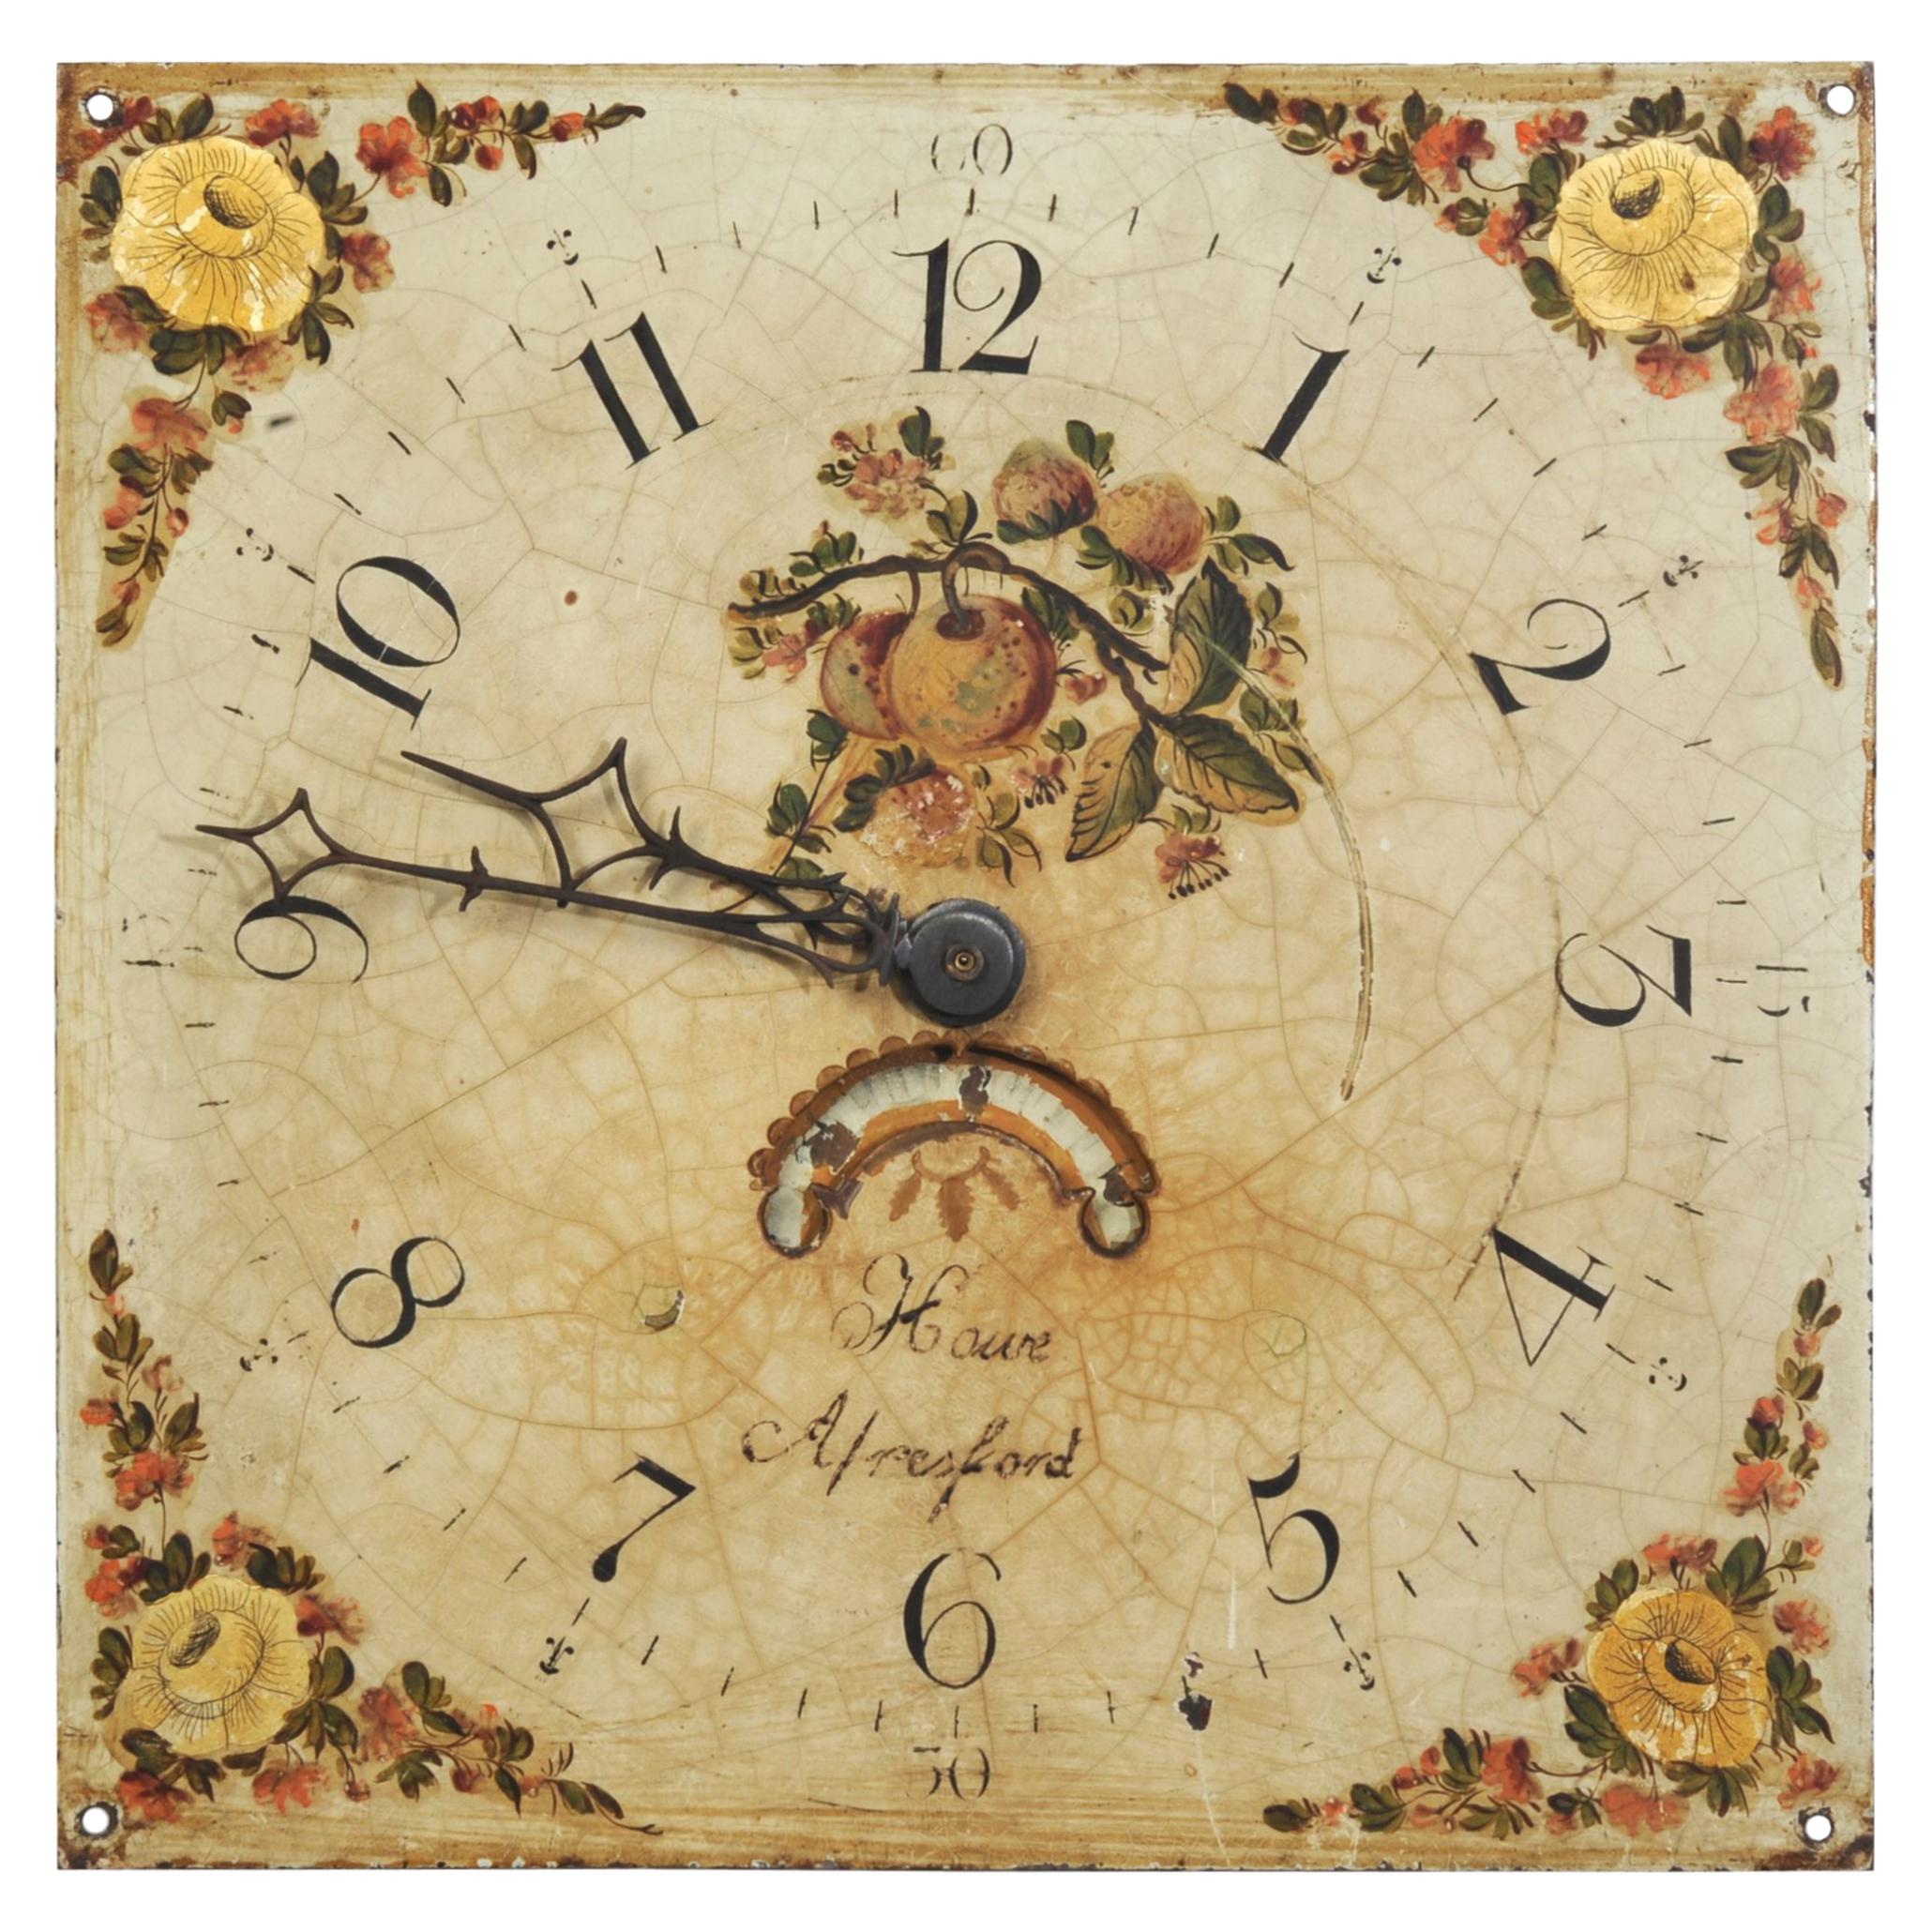 Antique English Clock Dial Face, Country Garden, Working